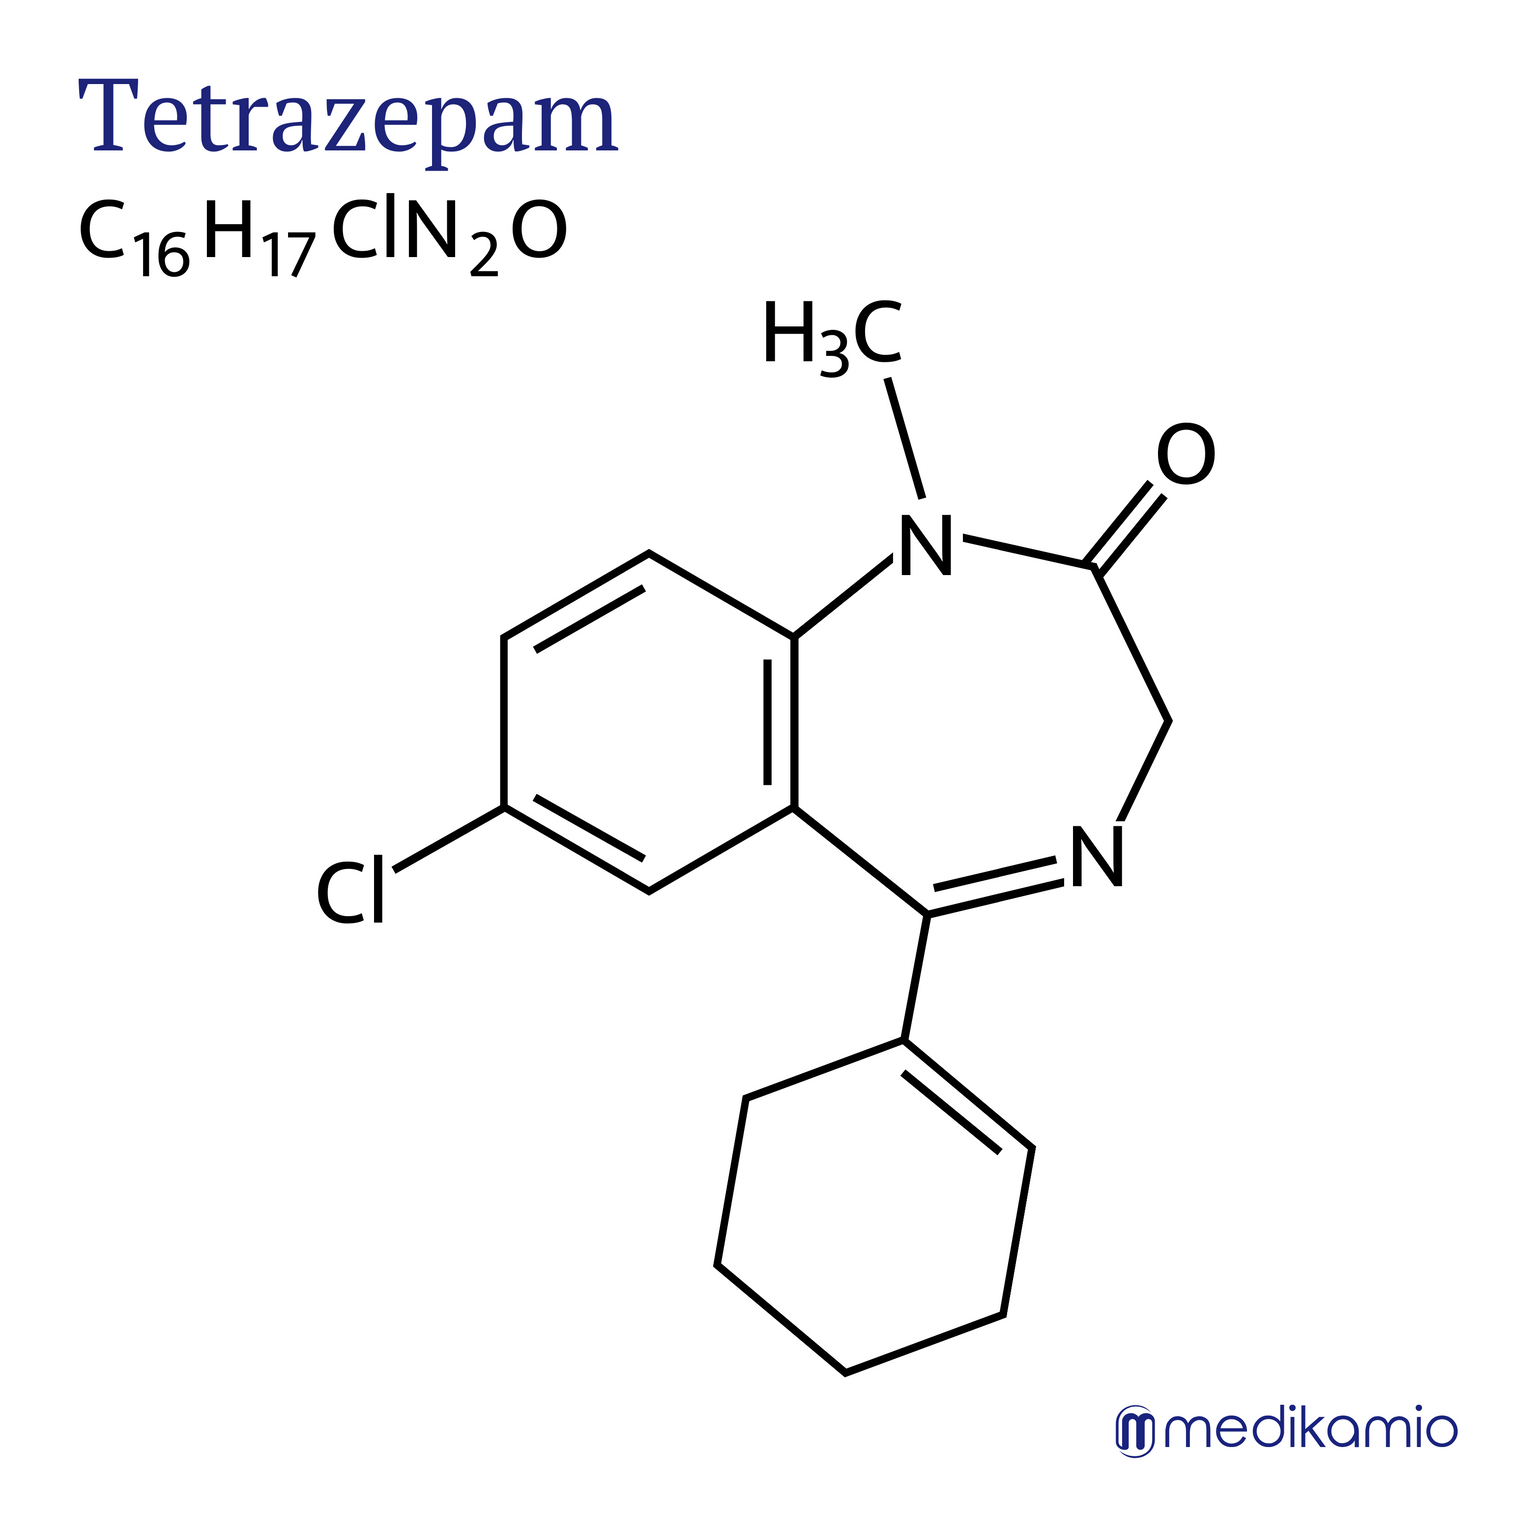 Fórmula estrutural gráfica da substância ativa tetrazepam